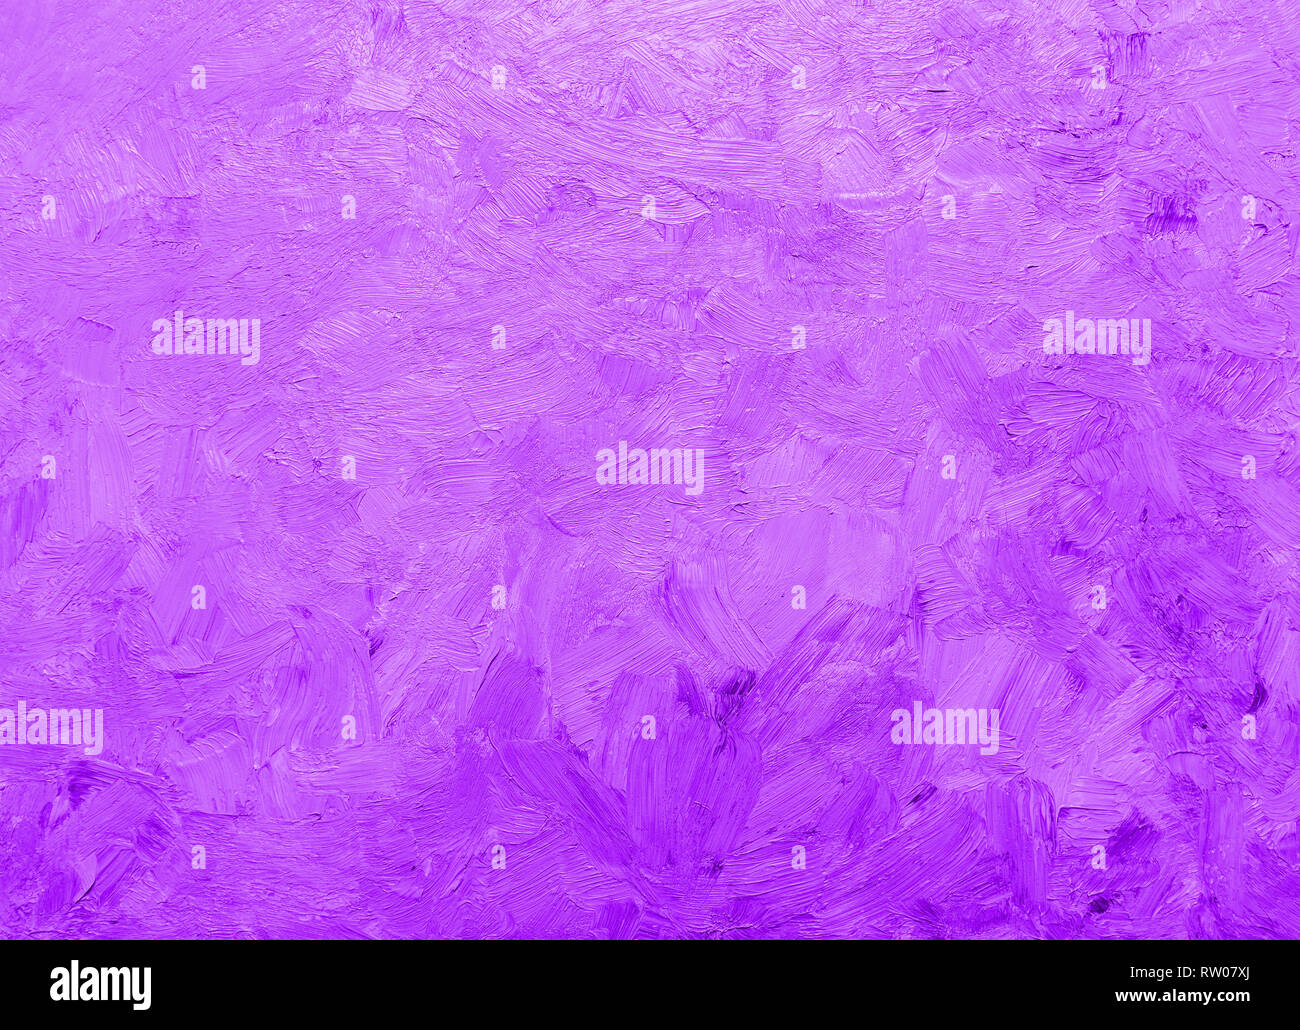 Pastellfarben Hell Violett Violett Gefarbt Gemalten Hintergrund Vollbild Ansicht Von Oben Stockfotografie Alamy